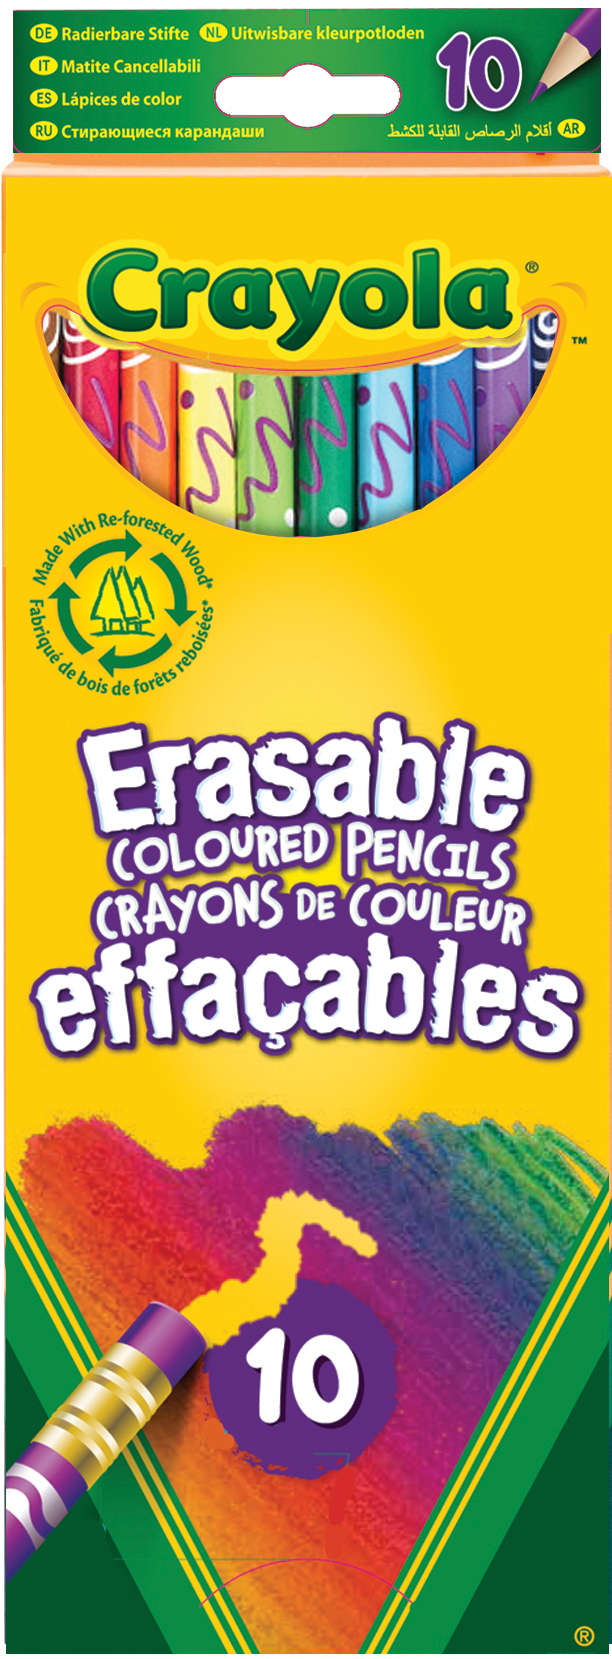 CRAYOLA Crayons 3.3635 10 pcs.